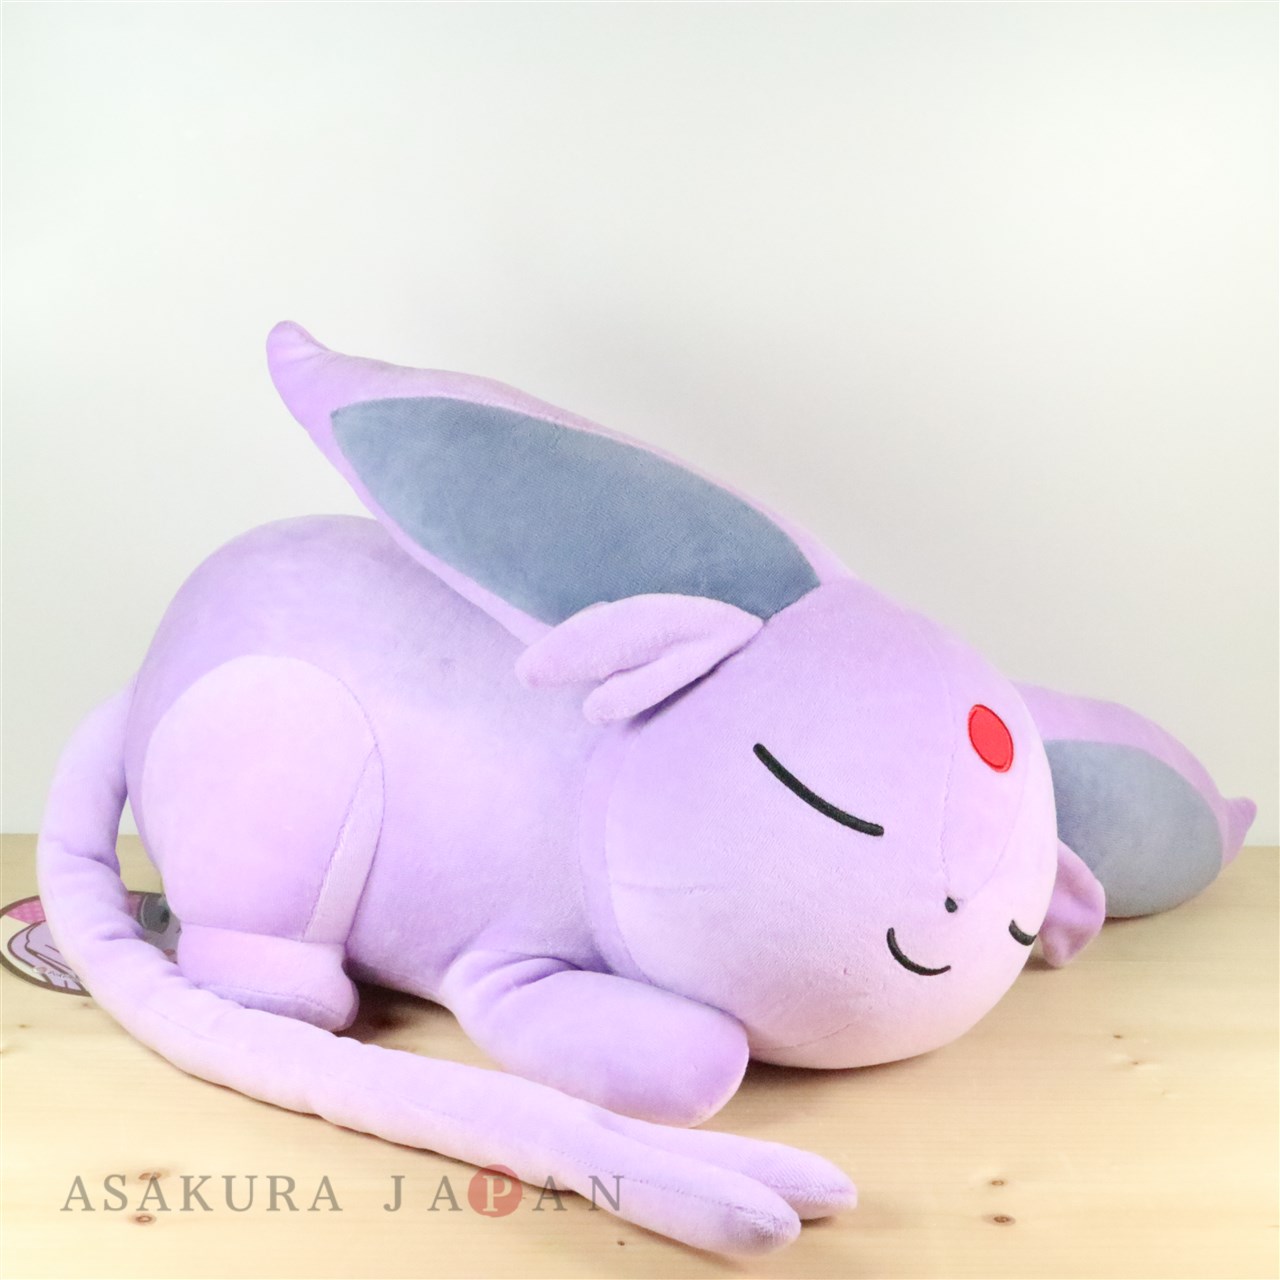 pokemon sleep pound